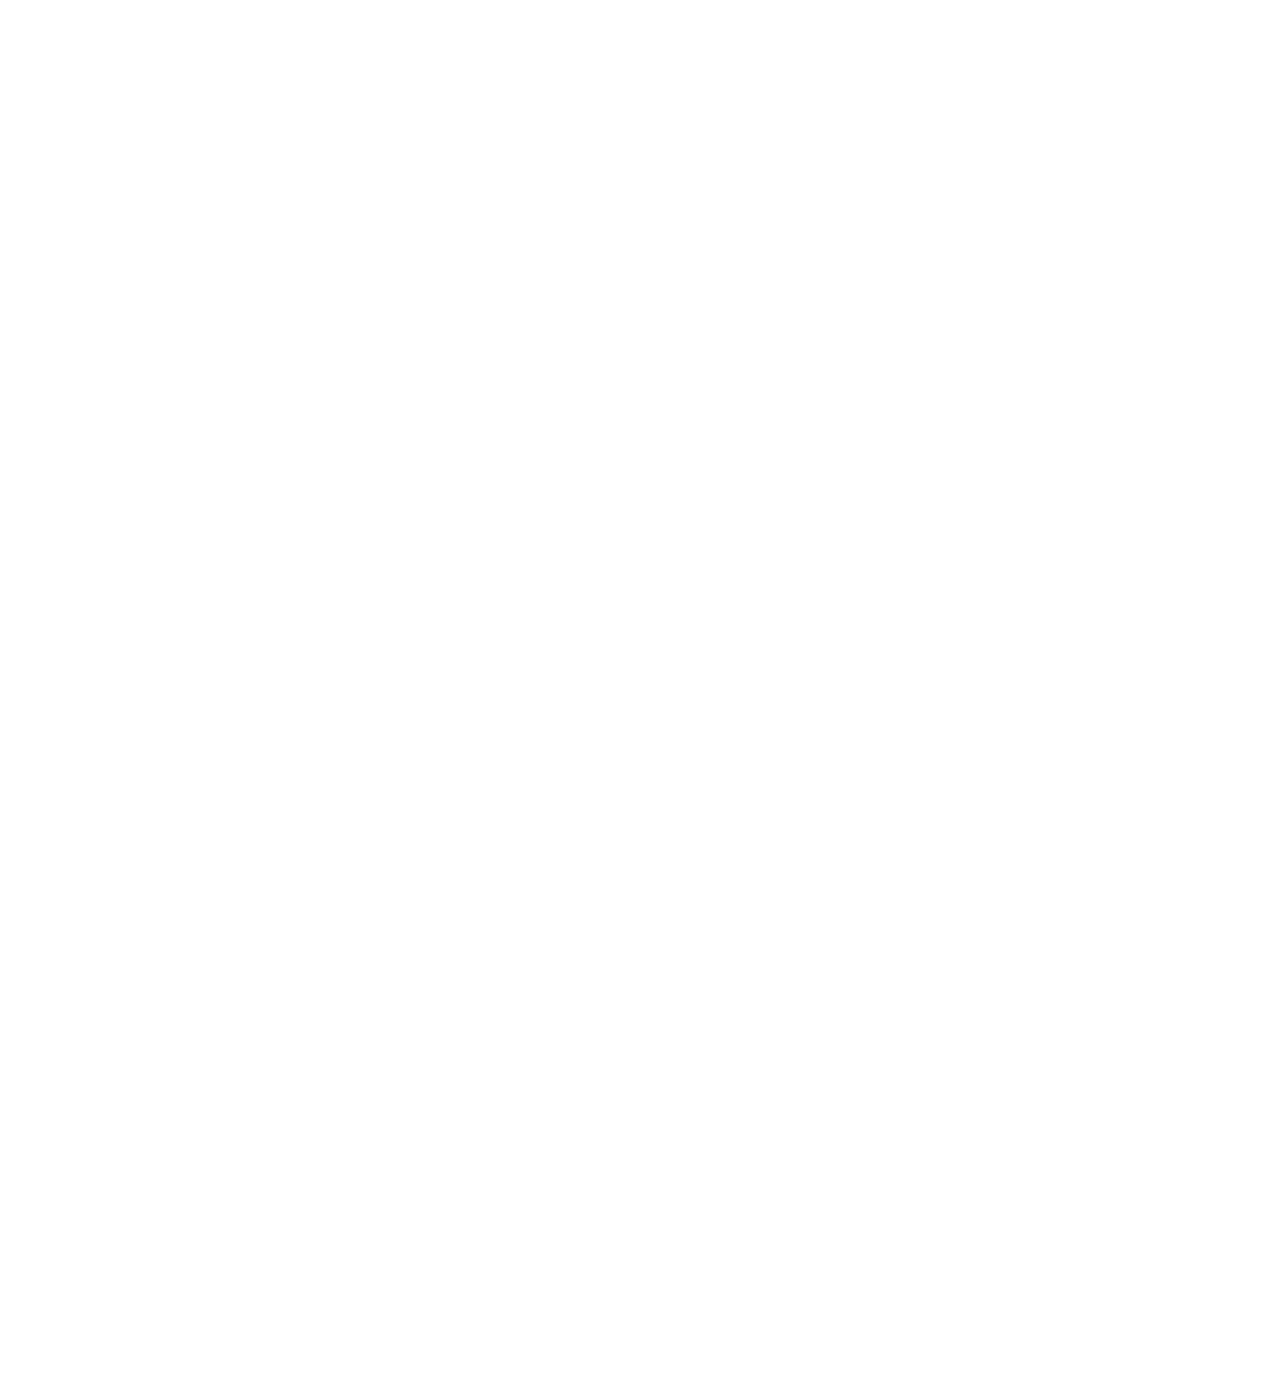 Trans4m Haiti